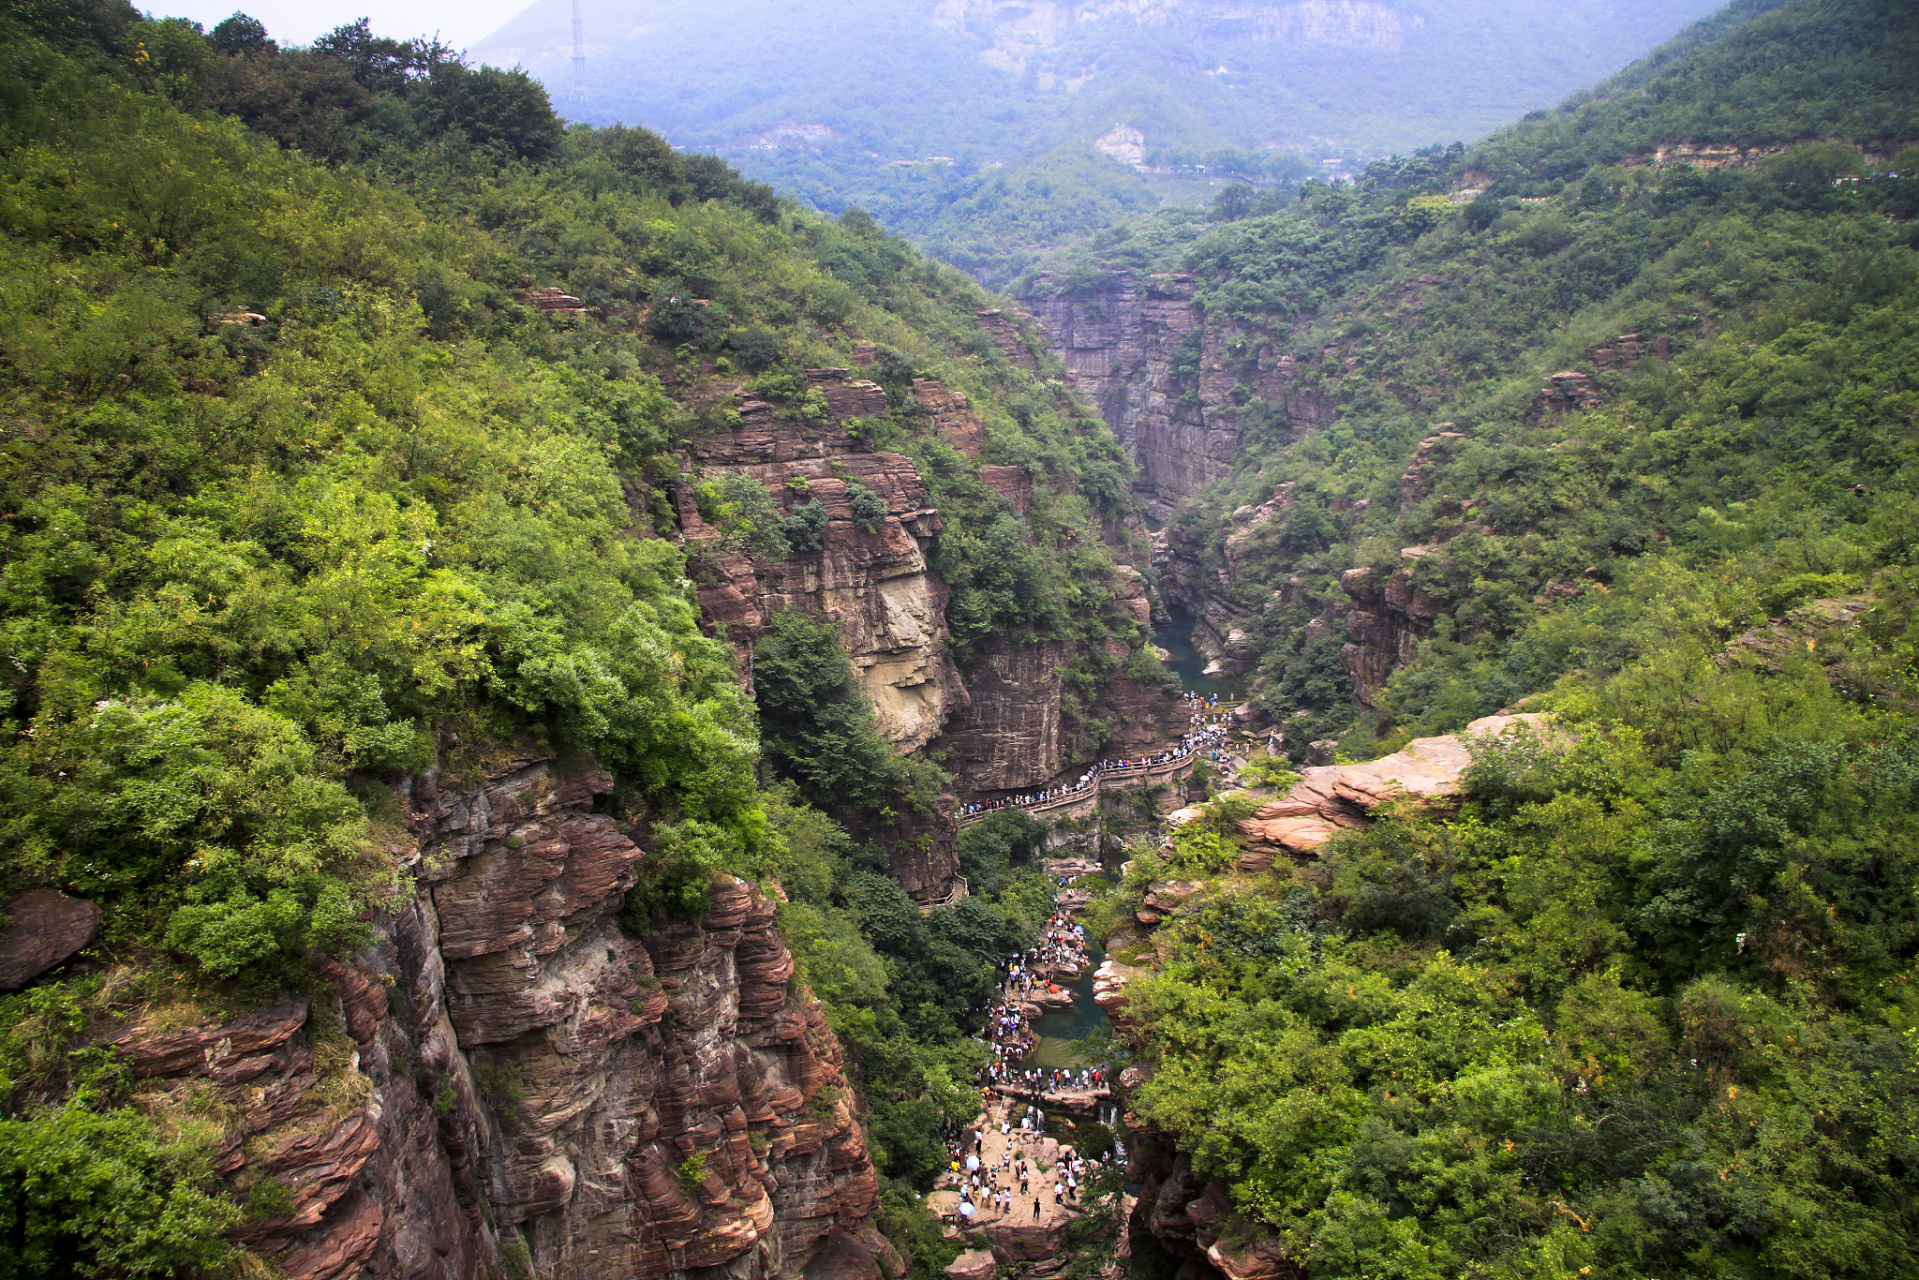 天桂山,位于中国河北省石家庄市平山县,是华北地区著名的旅游景点和